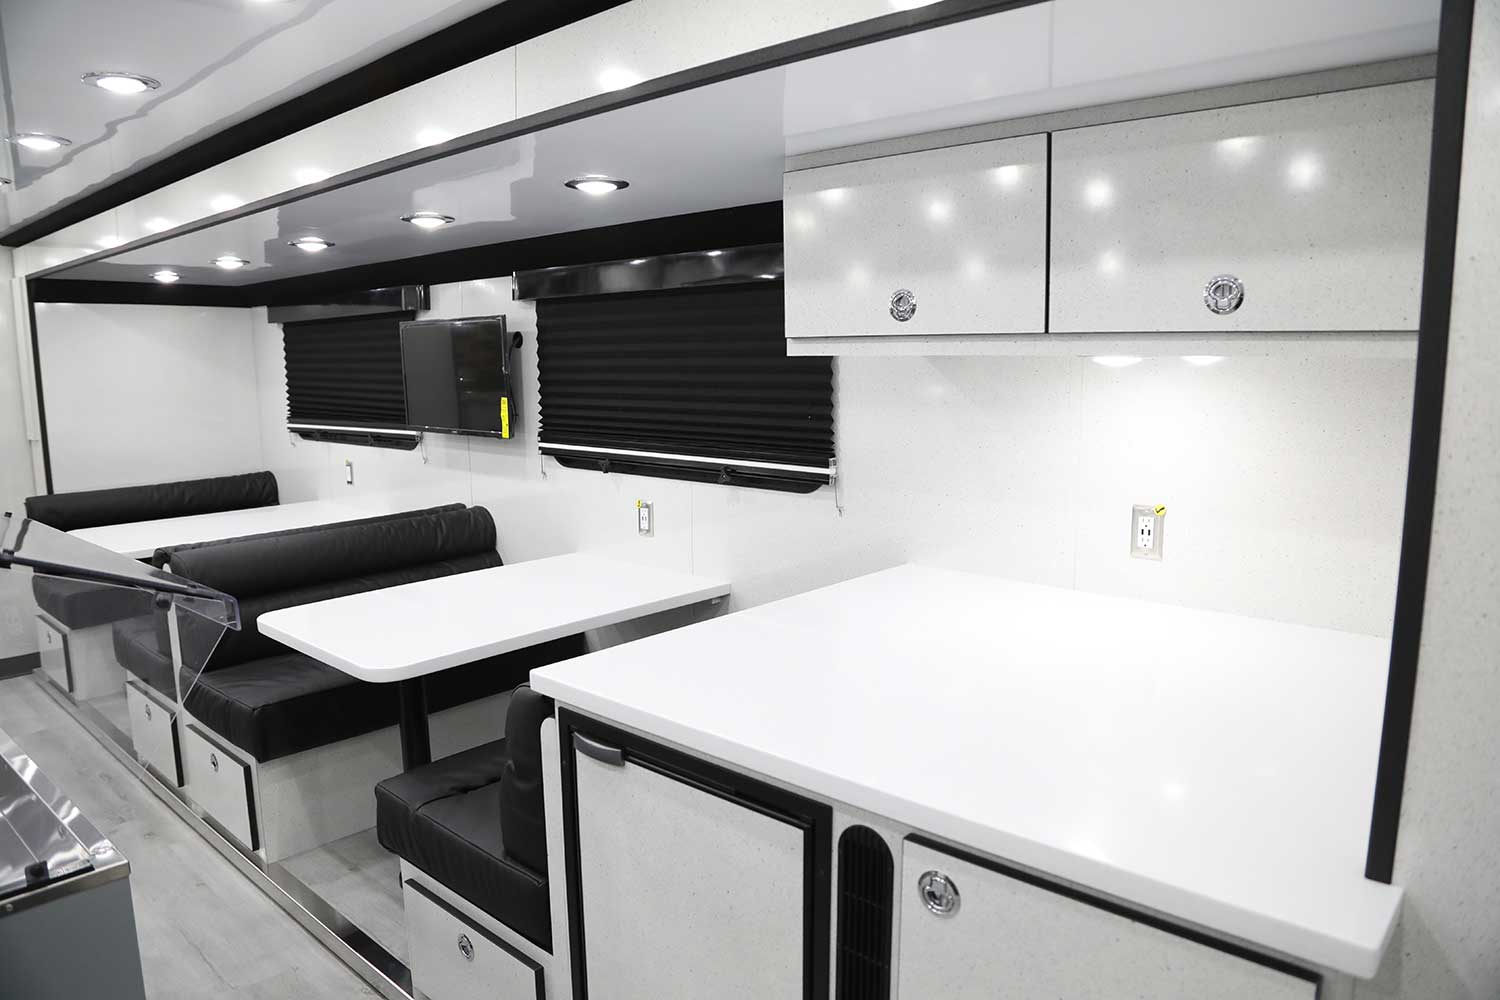 KTM kitchen trailer